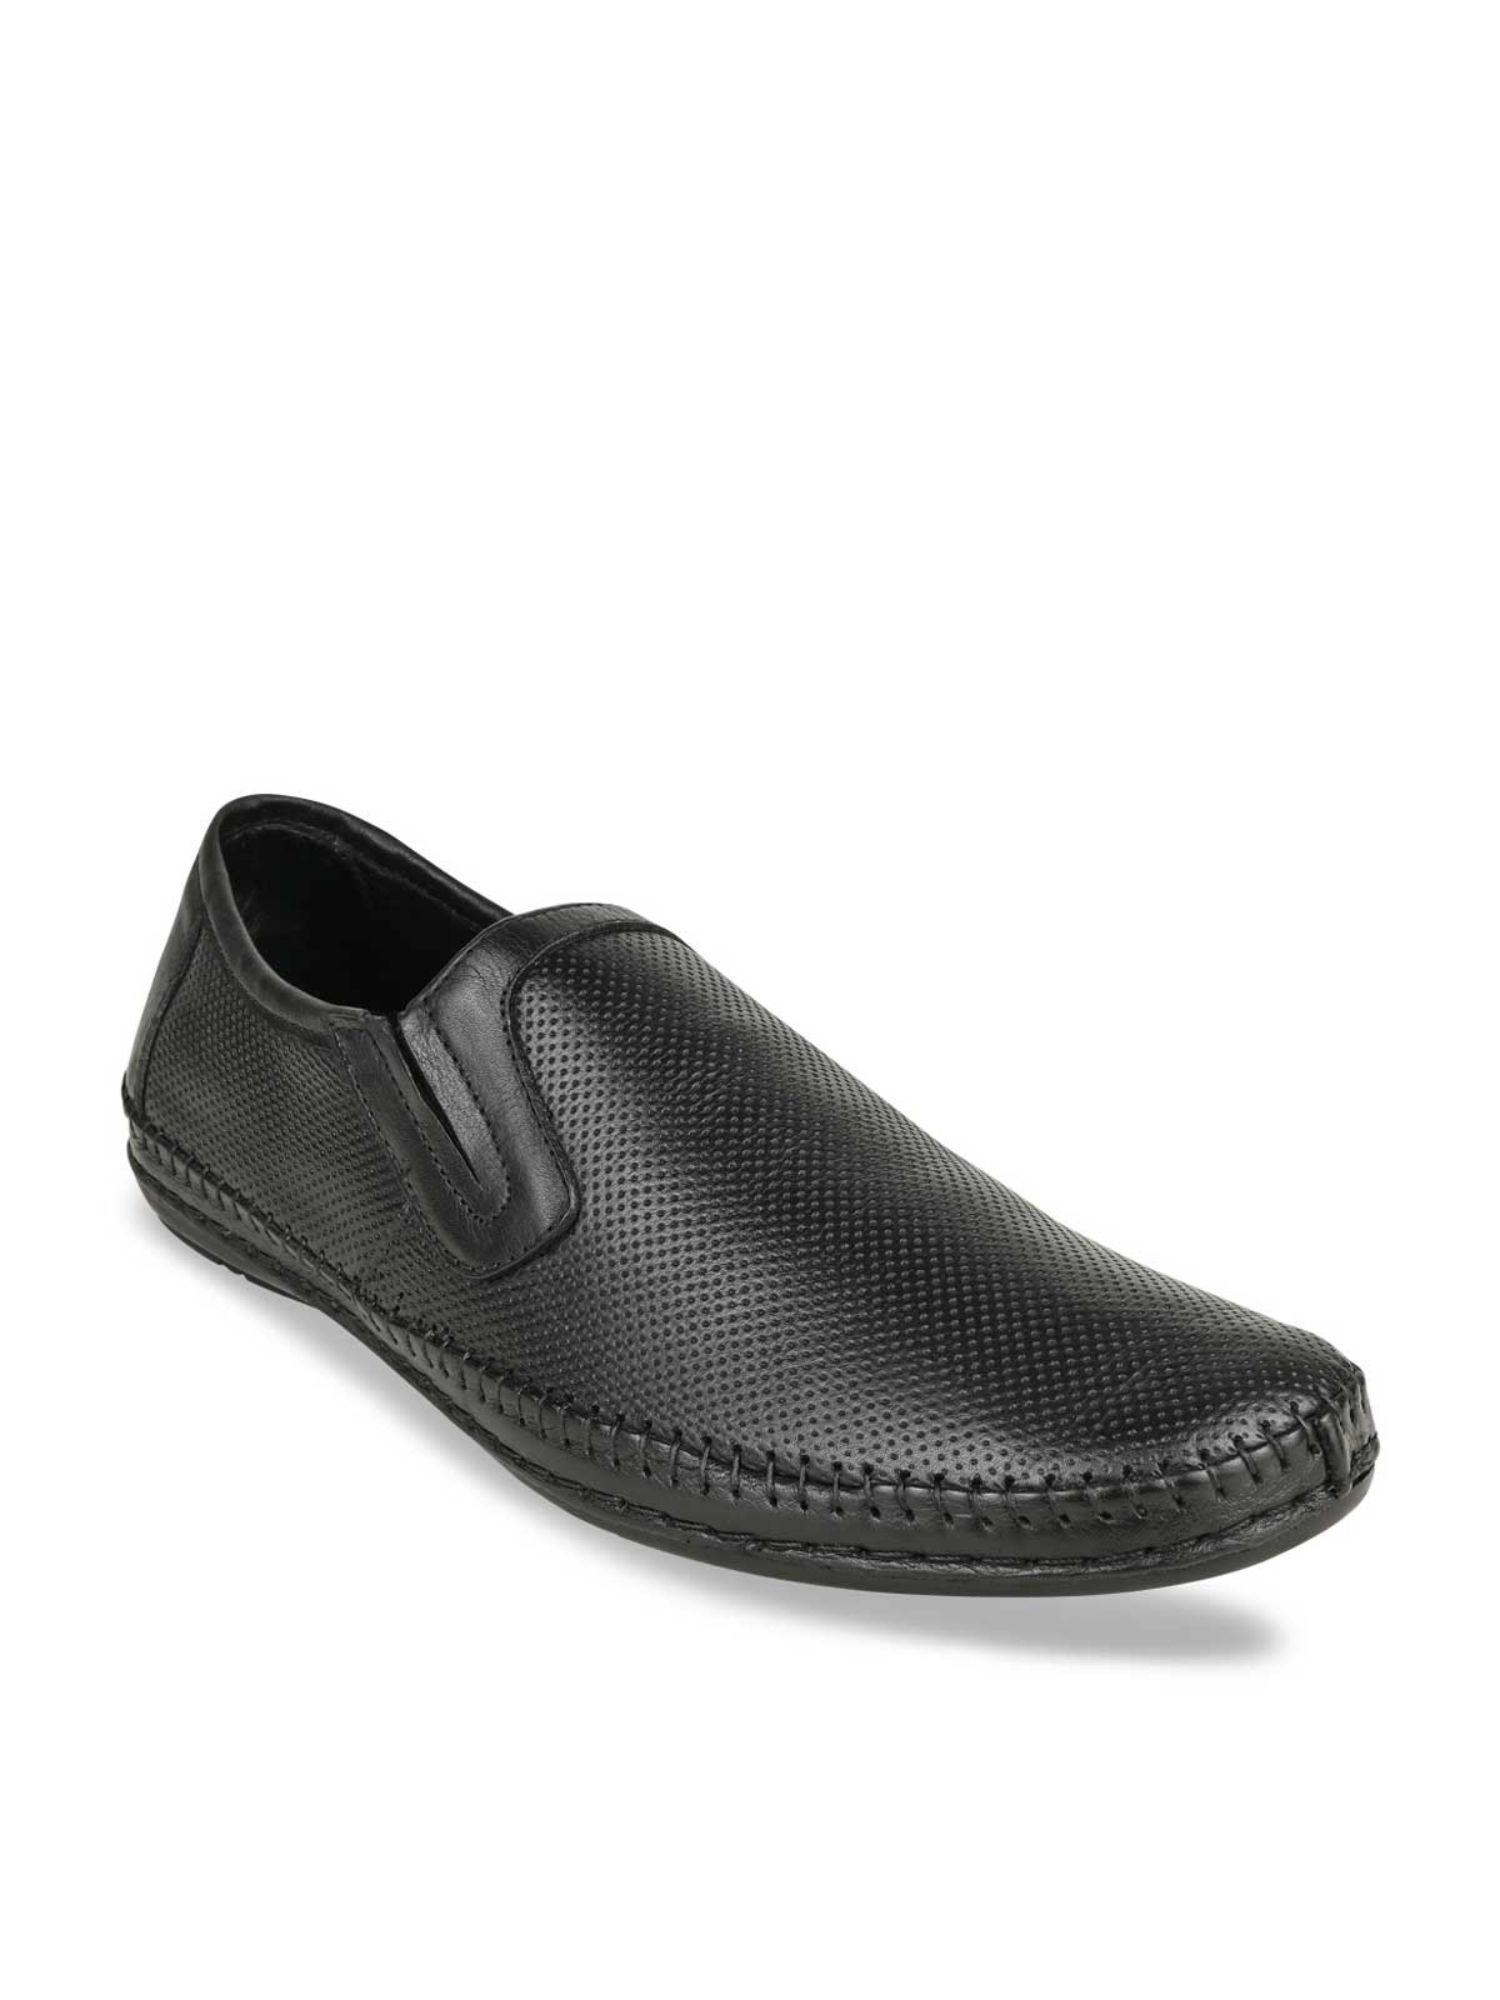 men-black-textured-formal-leather-slip-on-shoes